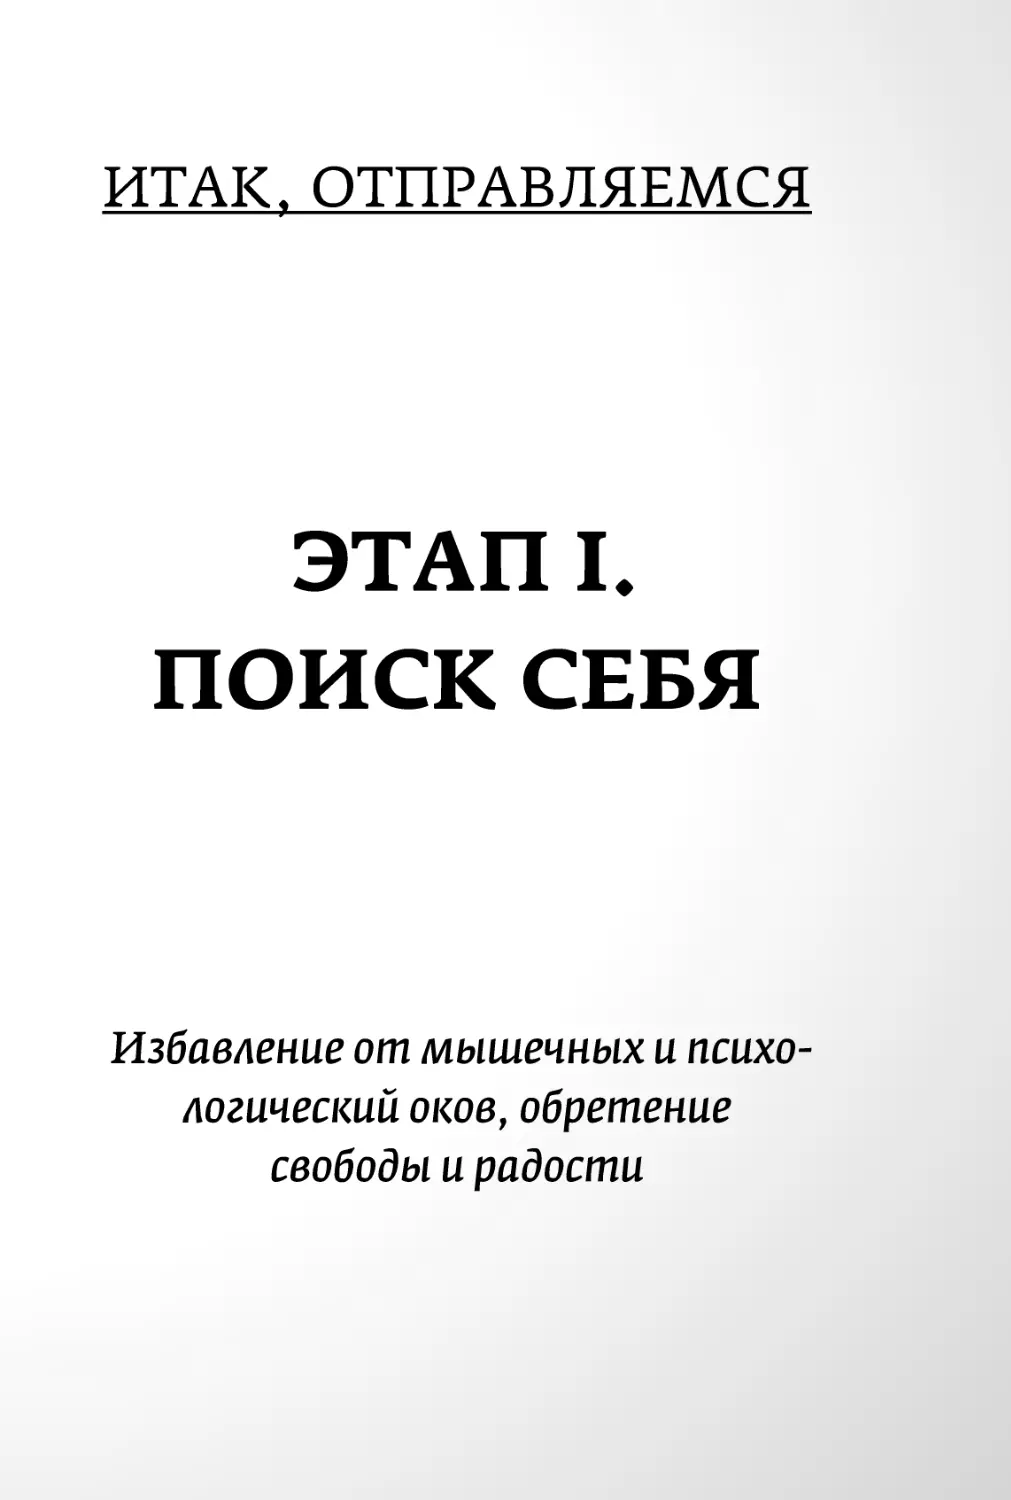 Sergey_Filippov_Dnevnik_samorazvitia_Evolyutsia_Vnutrennego_Sostoyania_29.pdf (p.29)